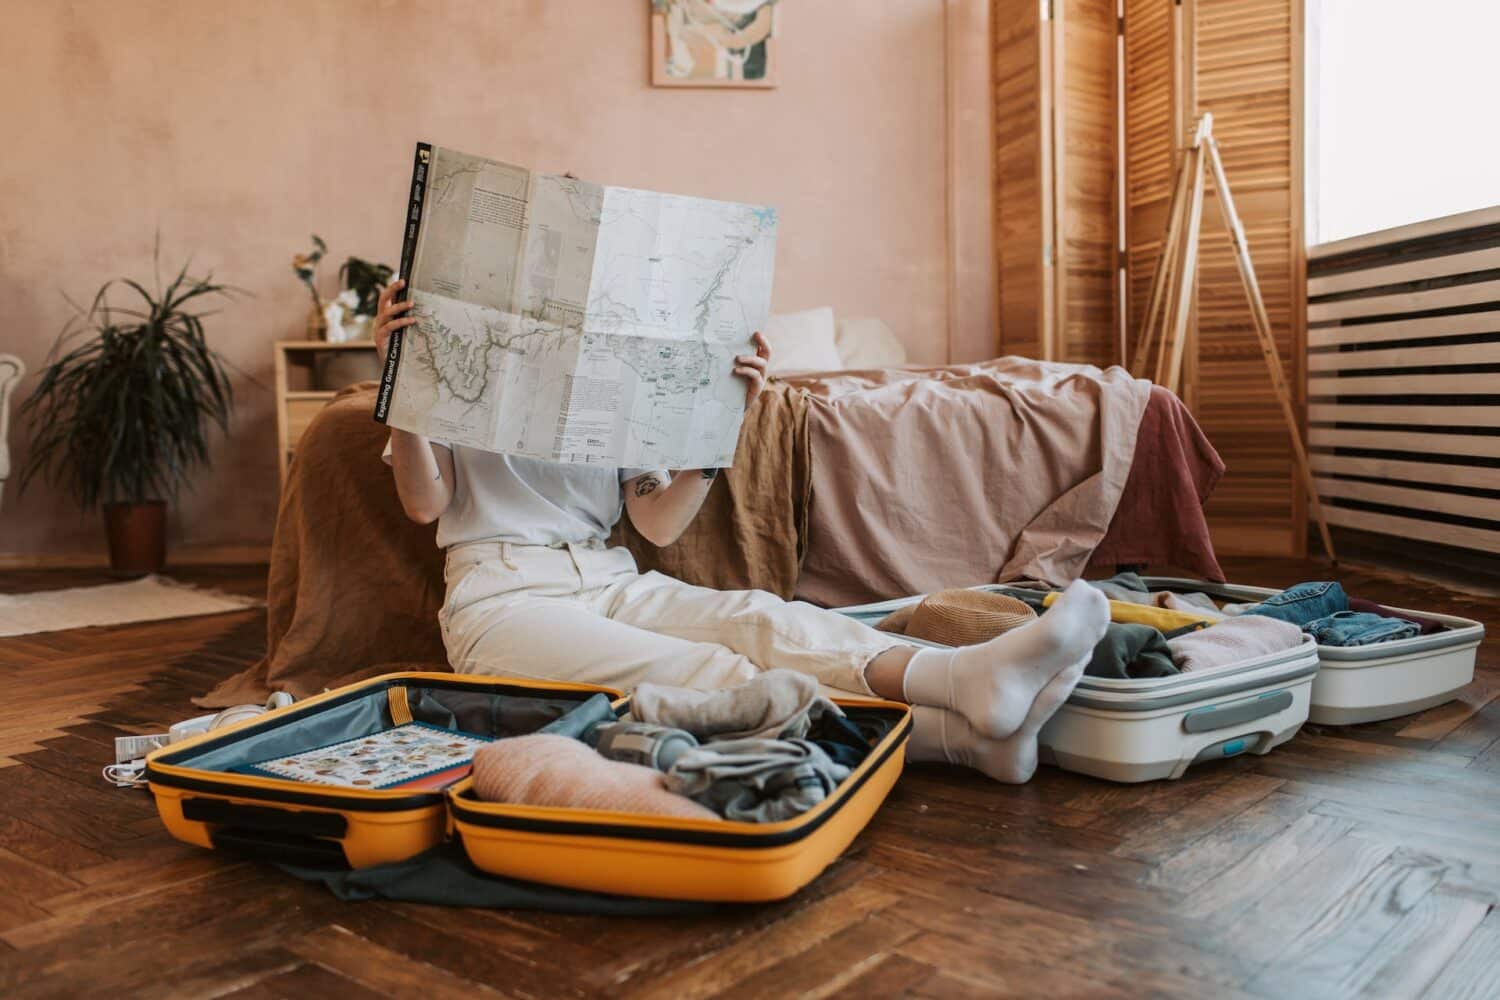 Uma mulher sentada no chão do quarto segurando um mapa em mãos, ao redor dela há duas malas abertas com itens dentro, para representar o seguro viagem para quem viaja muito